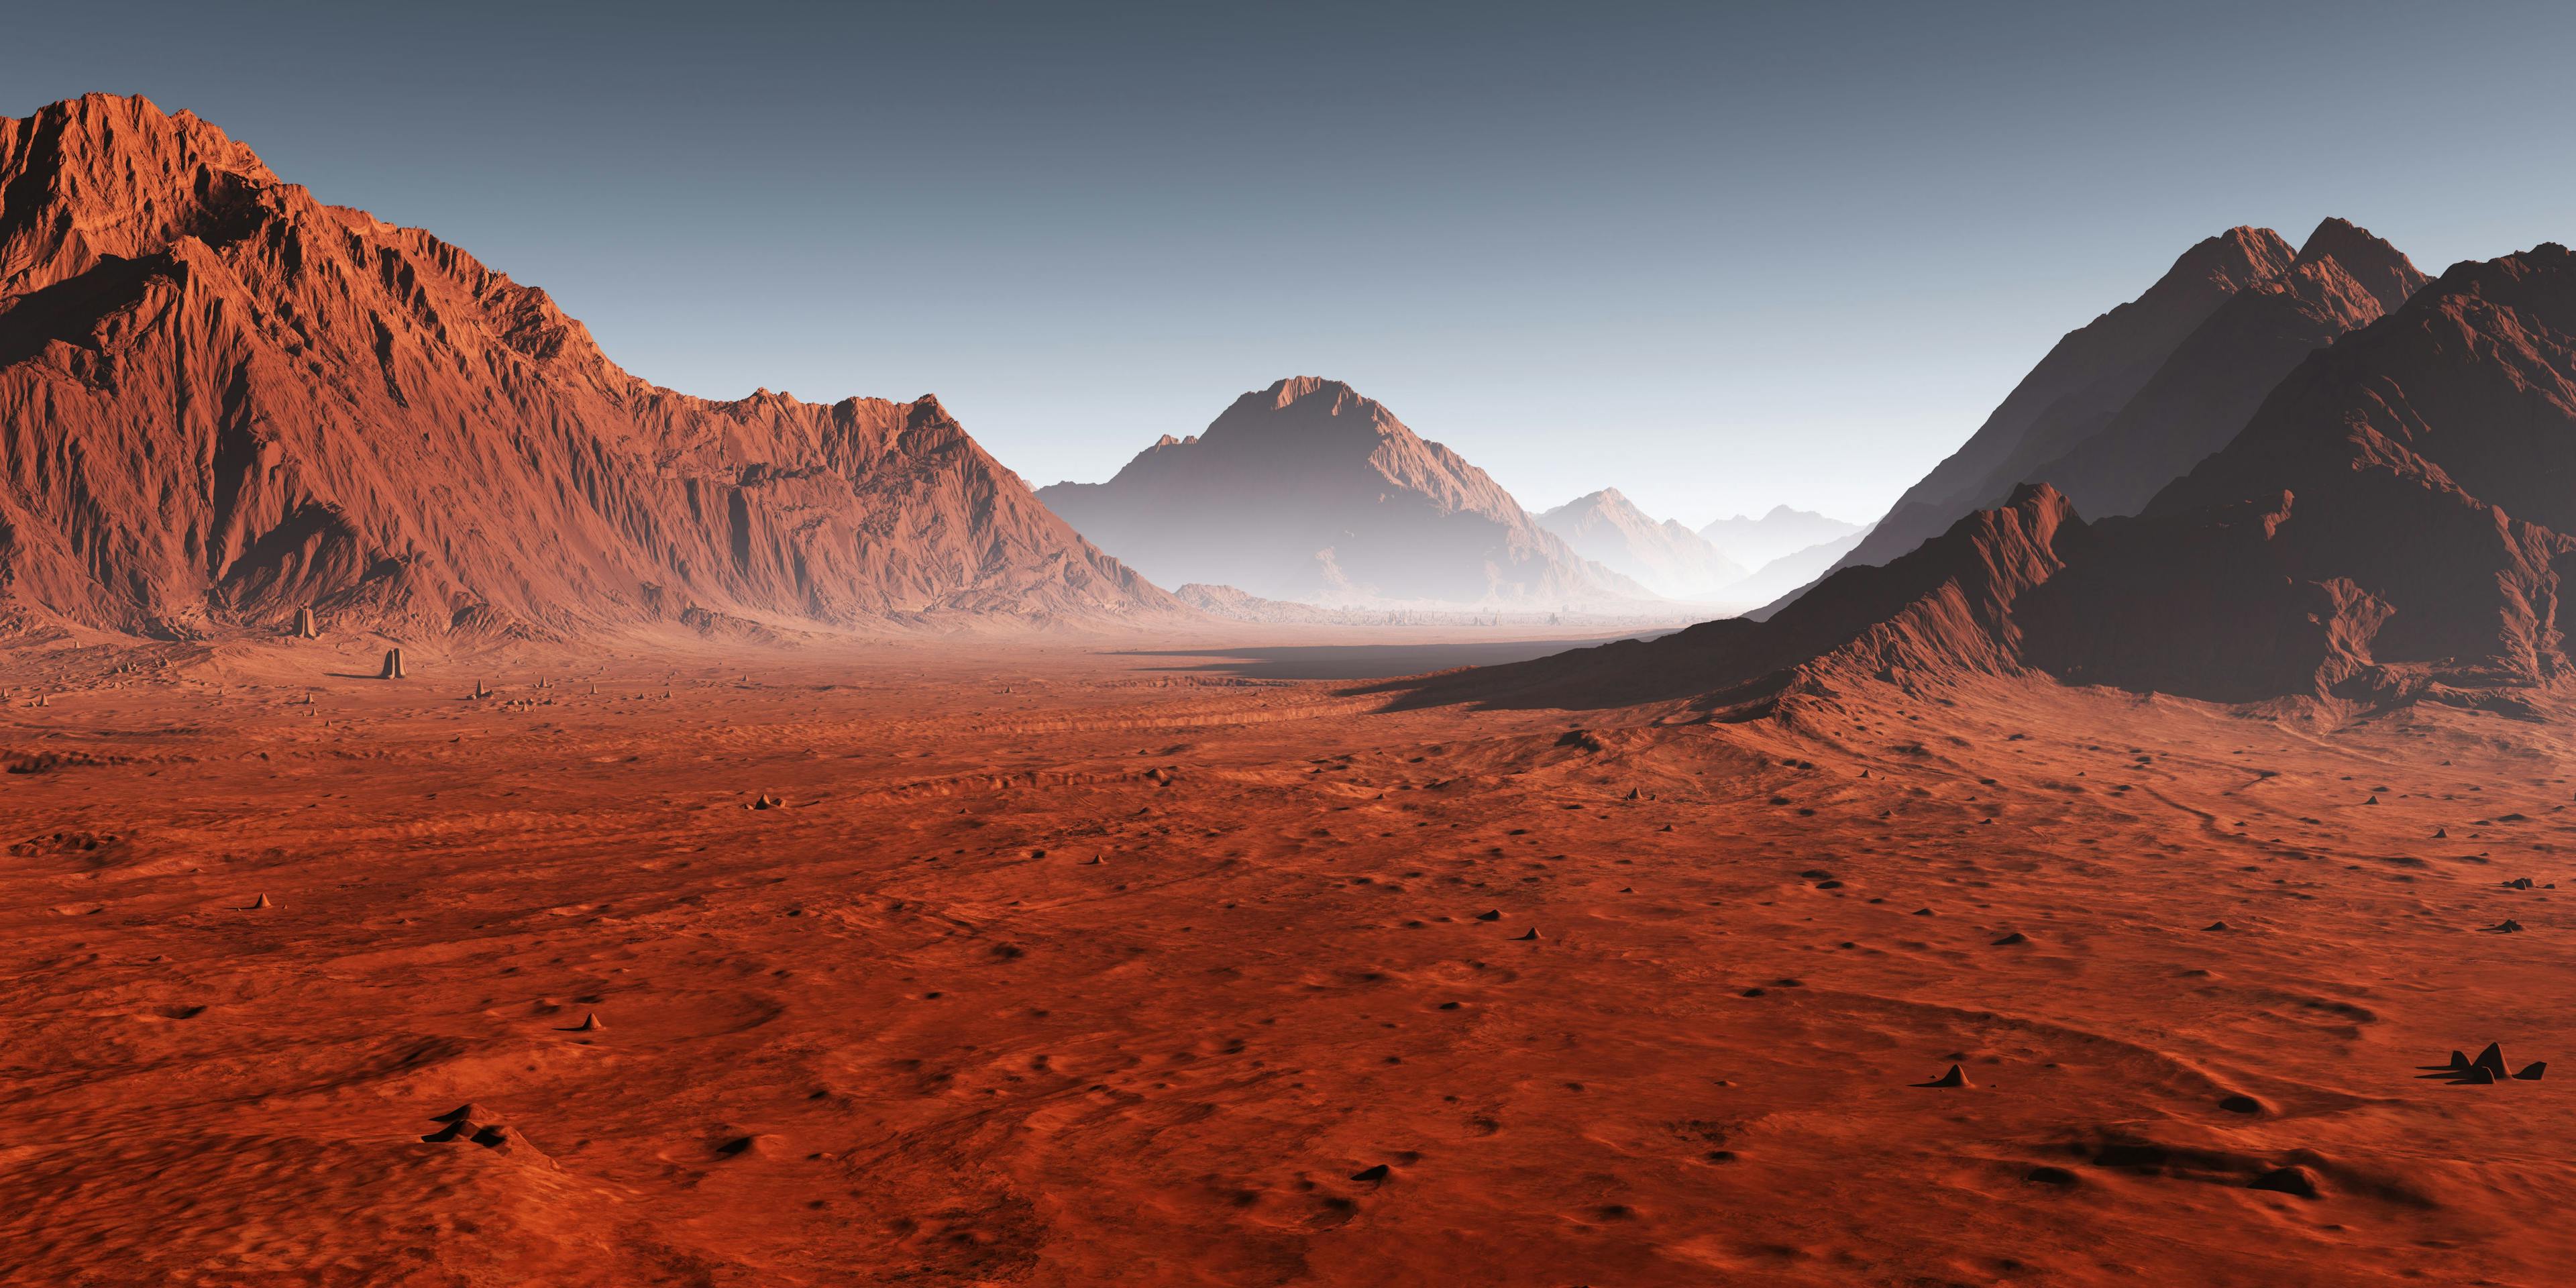 Sunset on Mars, dust obscured Martian landscape. 3D illustration | Image Credit: © Peter Jurik - stock.adobe.com